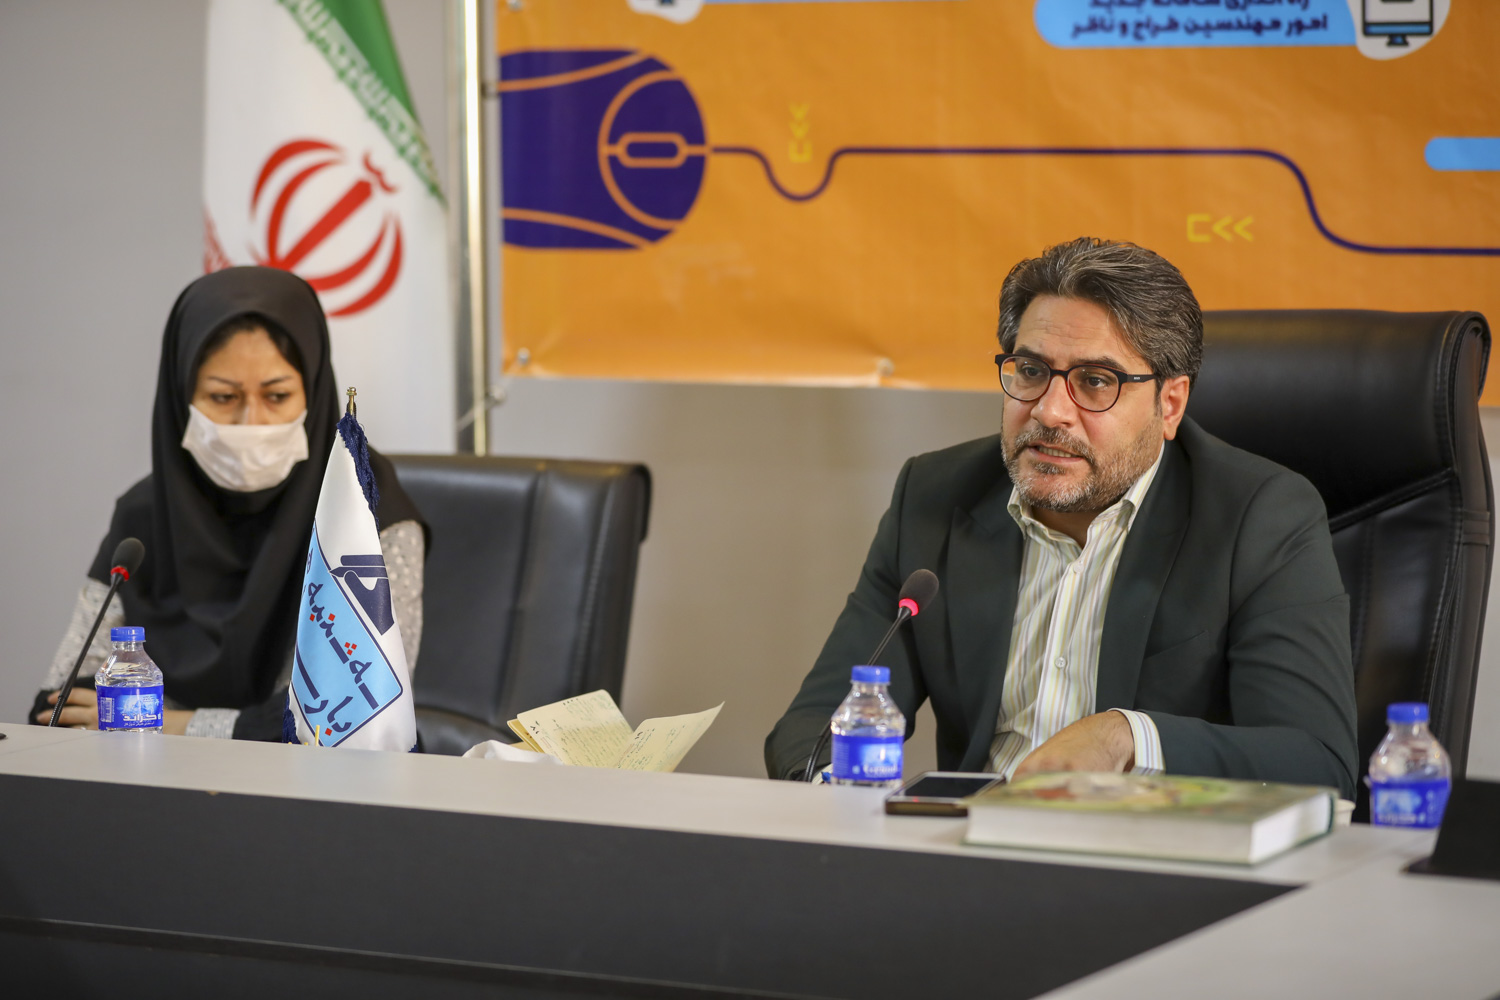 سامانه «اصفهان نما» ارائه خدمات شهرسازی به مردم را ۲۴ ساعته کرد/ بریده شدن پای دلالان از پرونده های شهرسازی